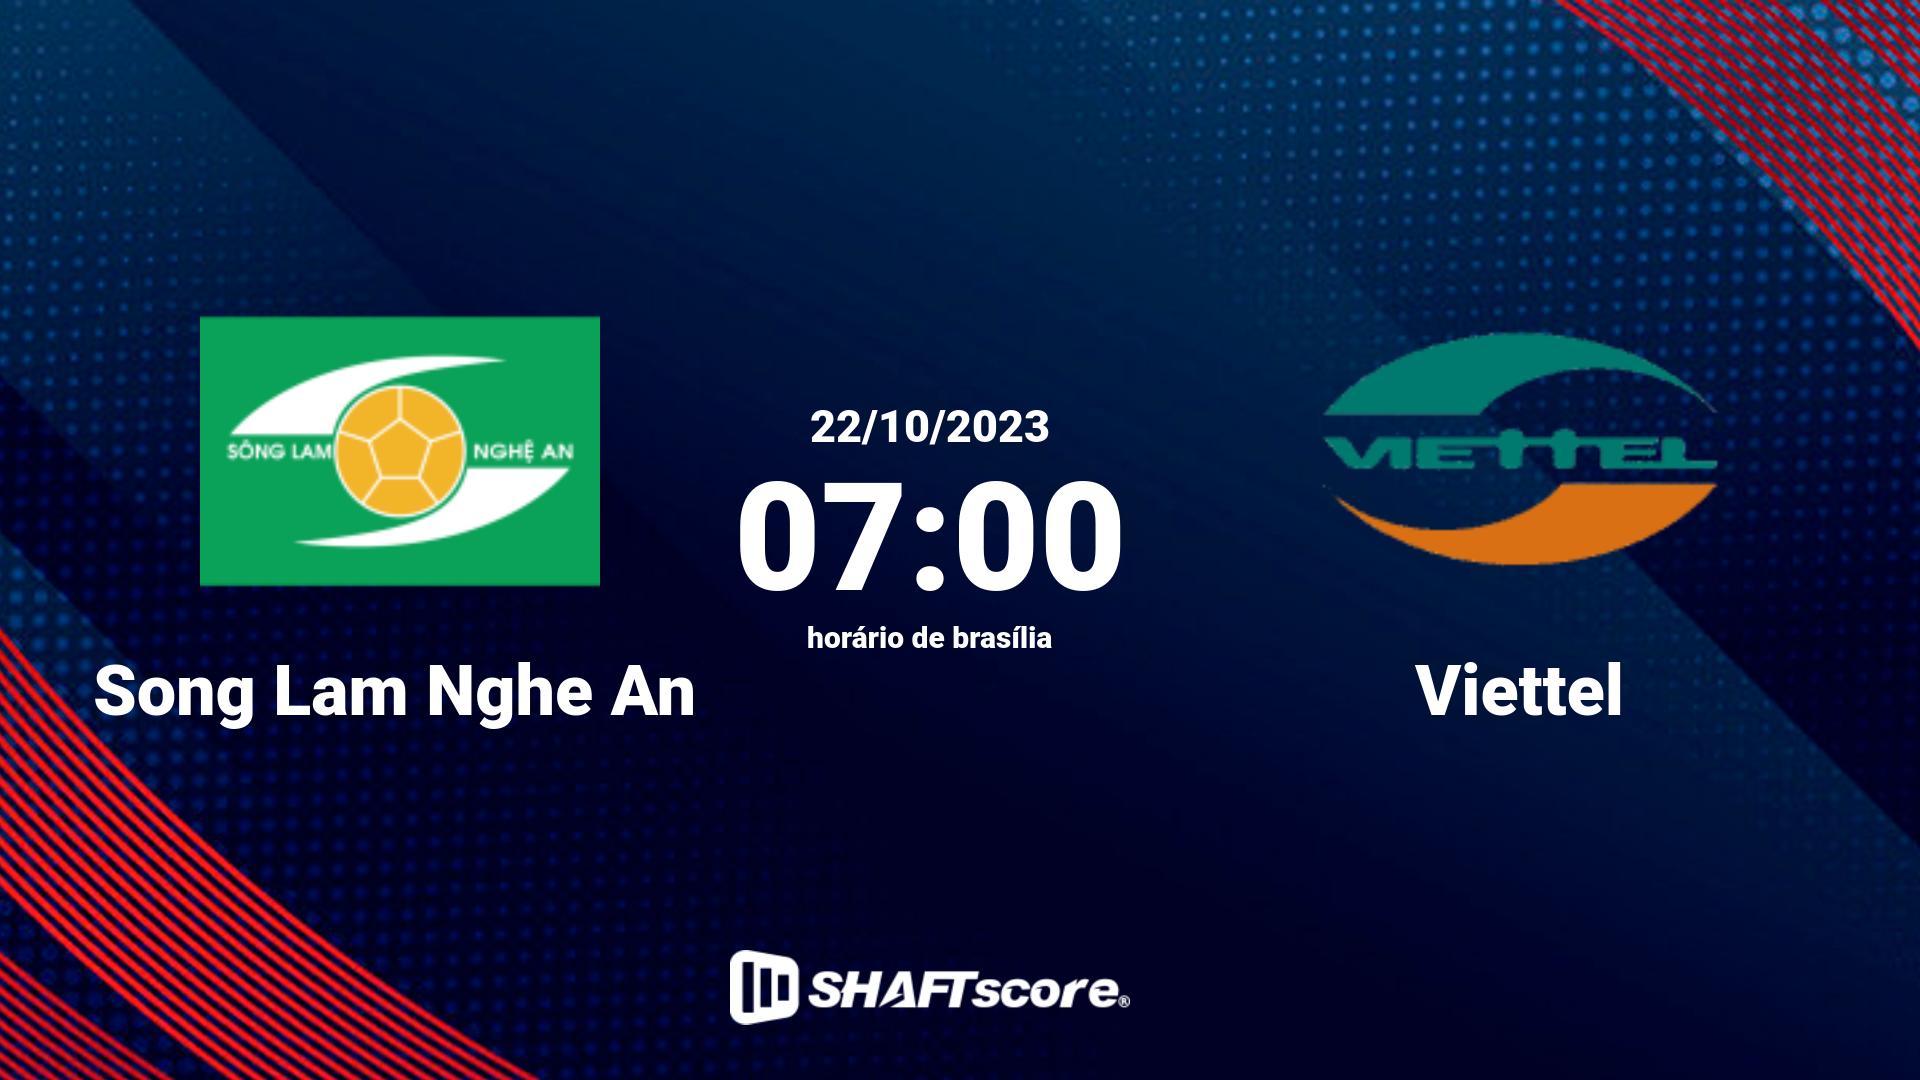 Estatísticas do jogo Song Lam Nghe An vs Viettel 22.10 07:00